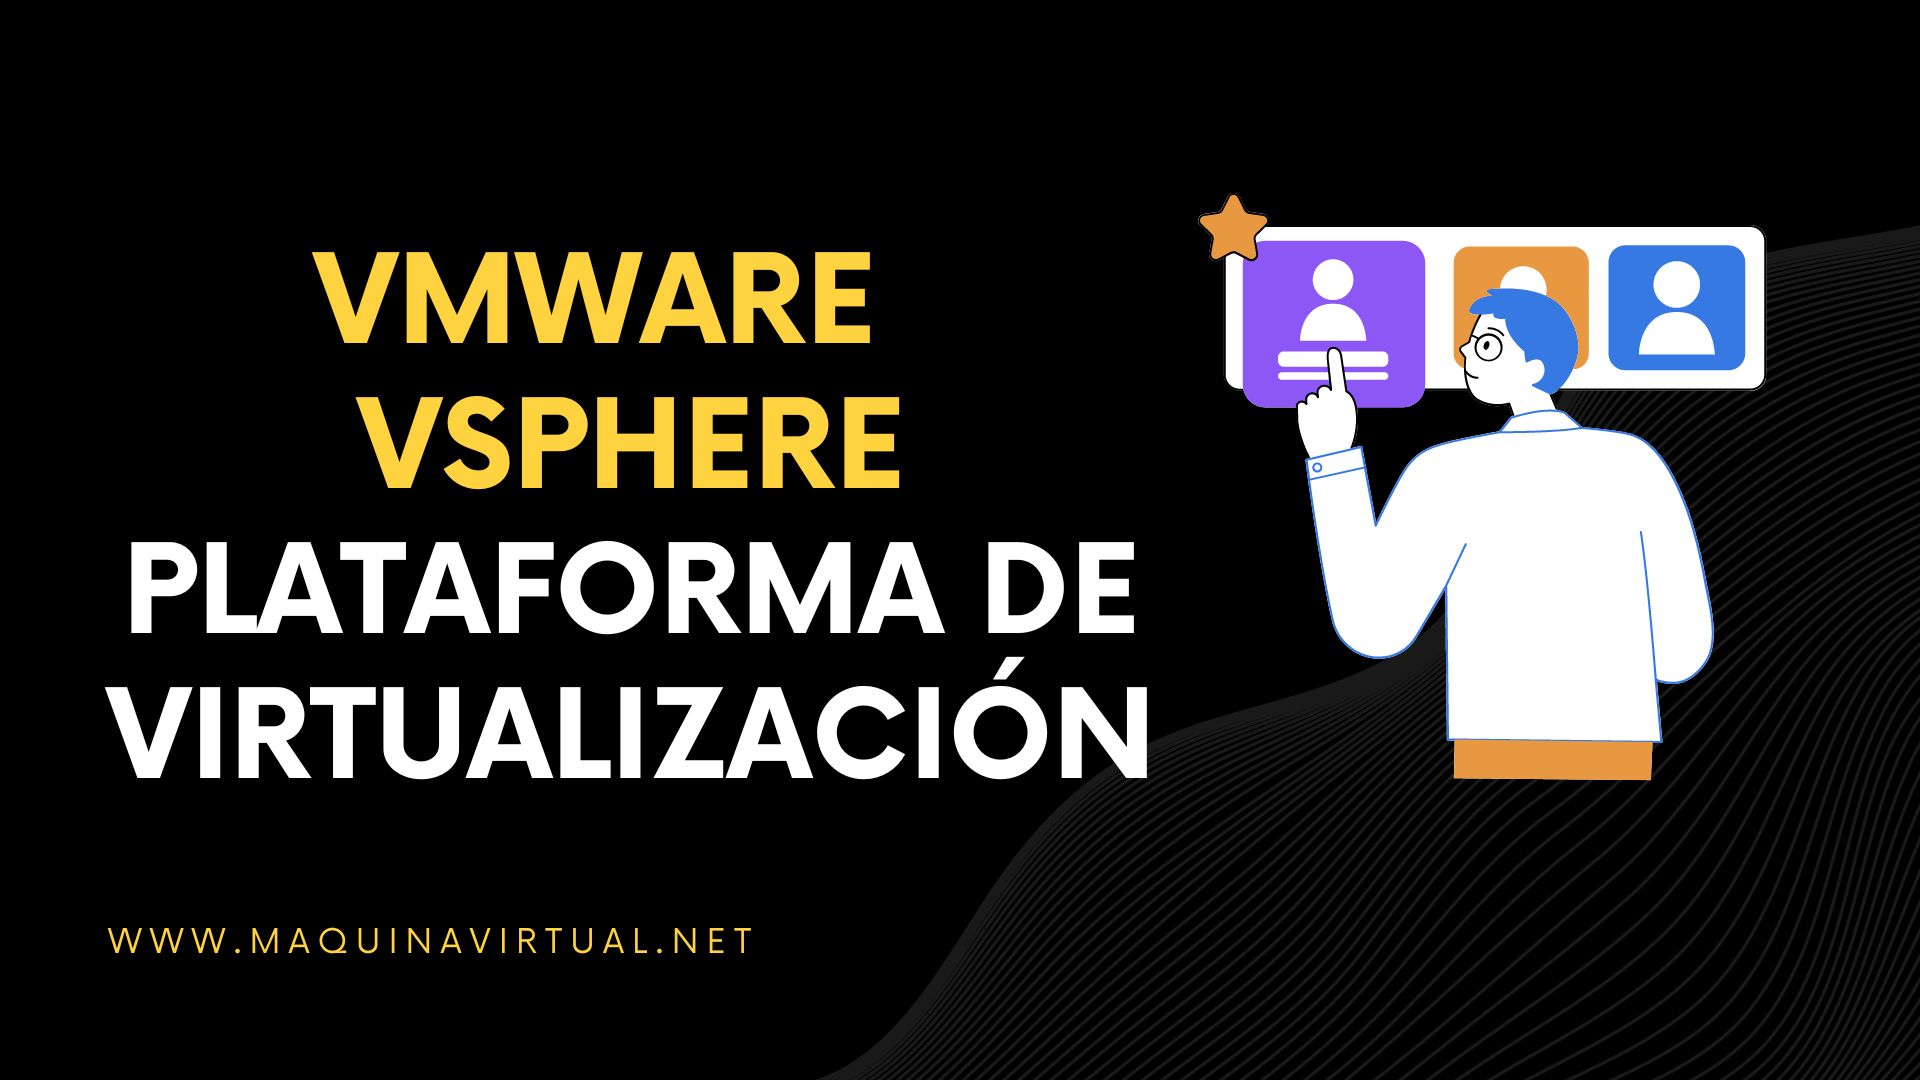 Vmware Vsphere La Plataforma Virtualización Maquina Virtual 5108